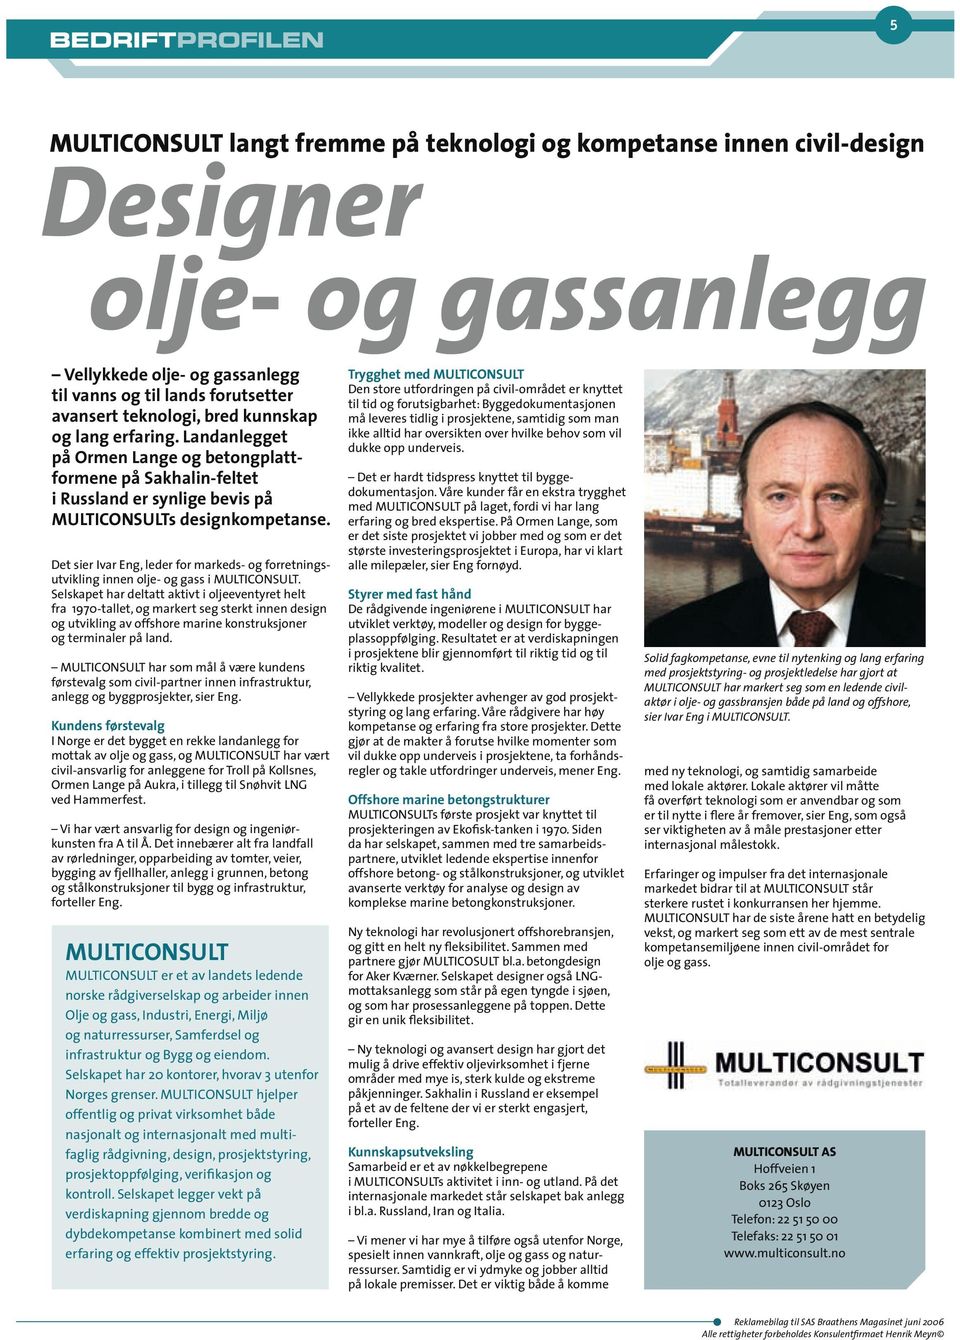 Det sier Ivar Eng, leder for markeds- og forretnings utvikling innen olje- og gass i MULTICONSULT.